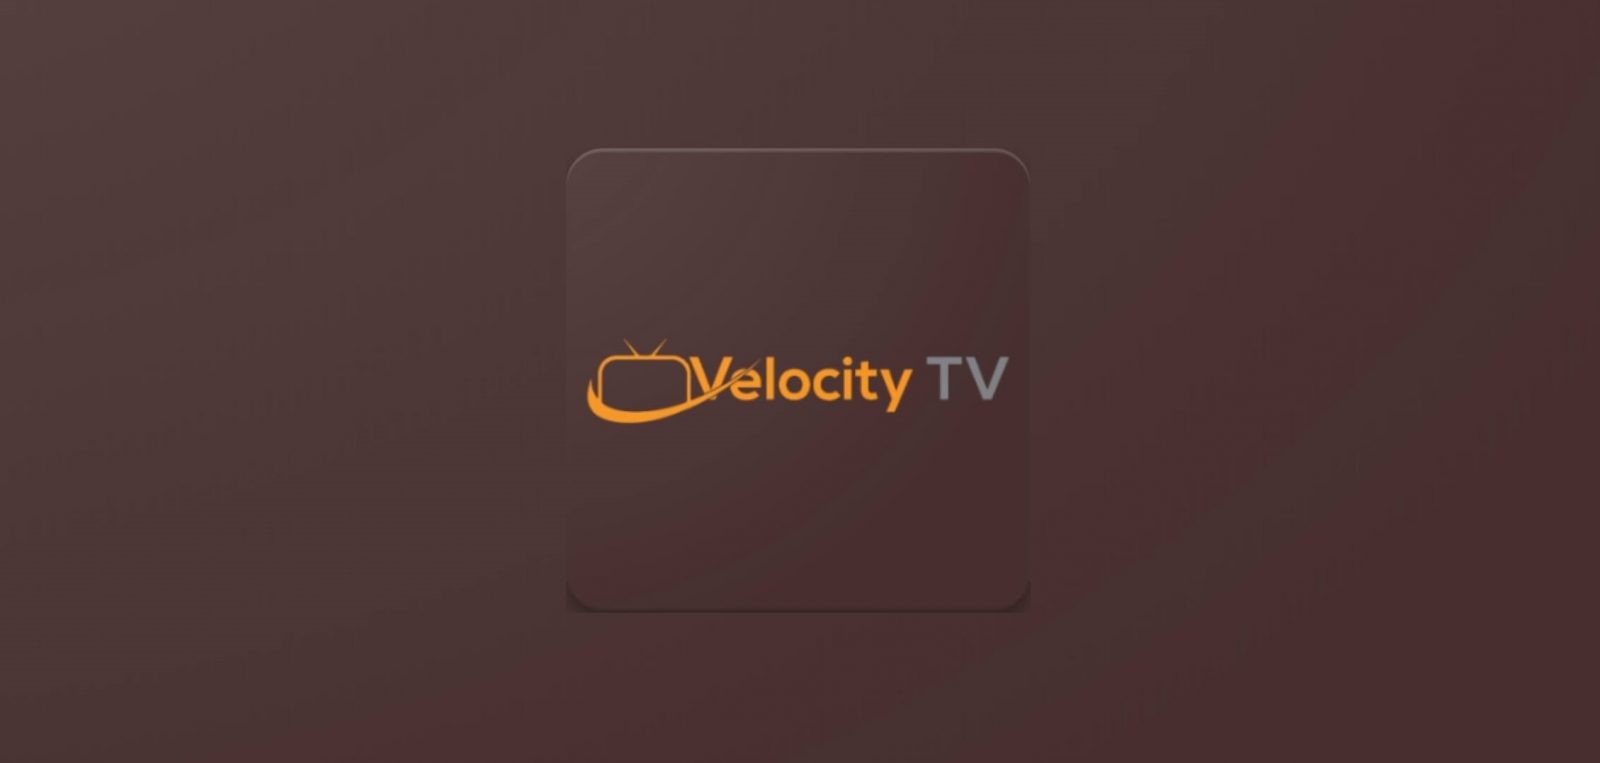 Velocity IPTV